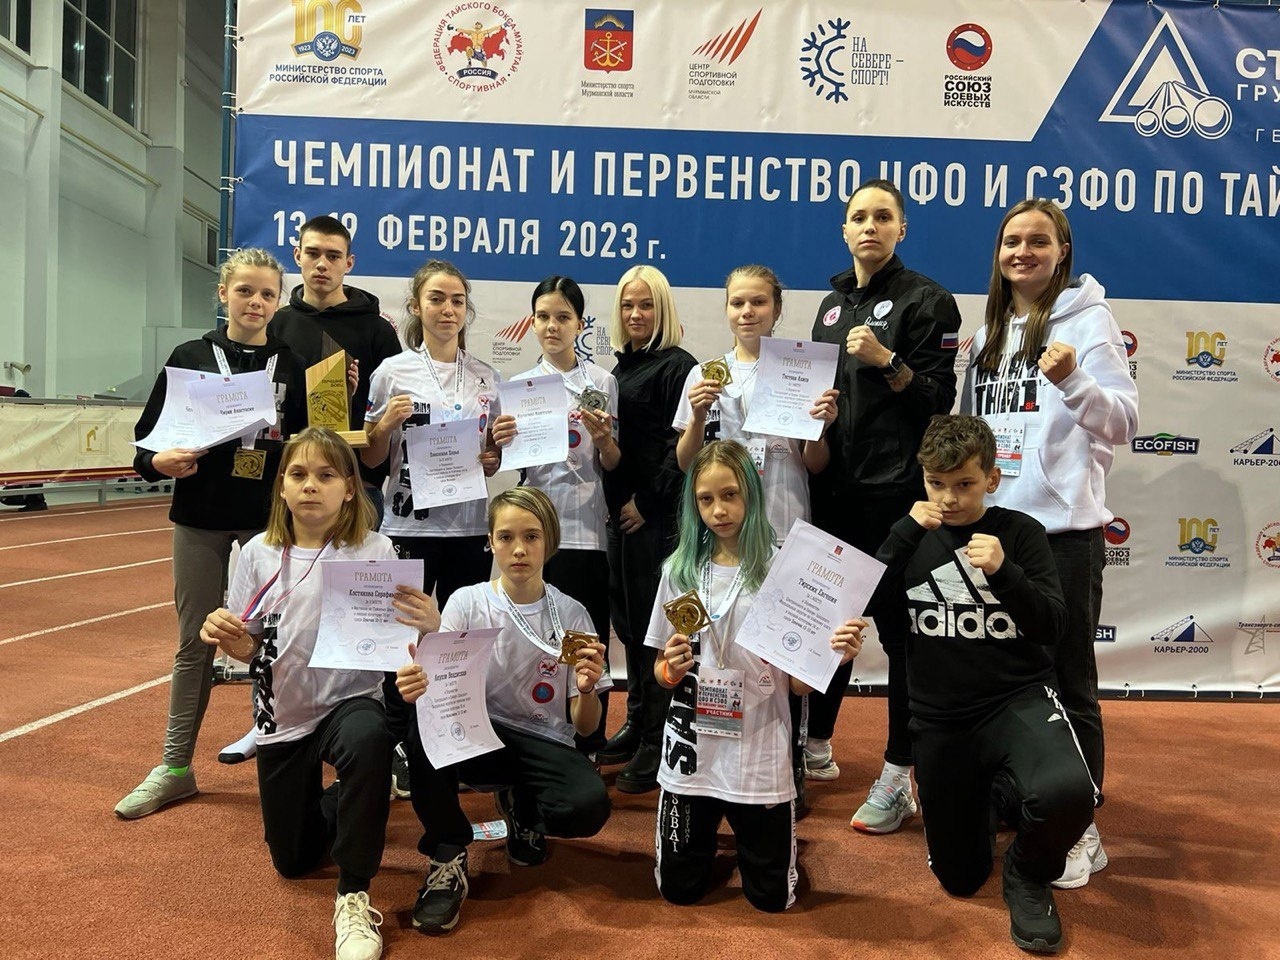 Сборная Карелии по тайскому боксу завоевала сразу 9 медалей на чемпионате и первенстве Северо-Запада